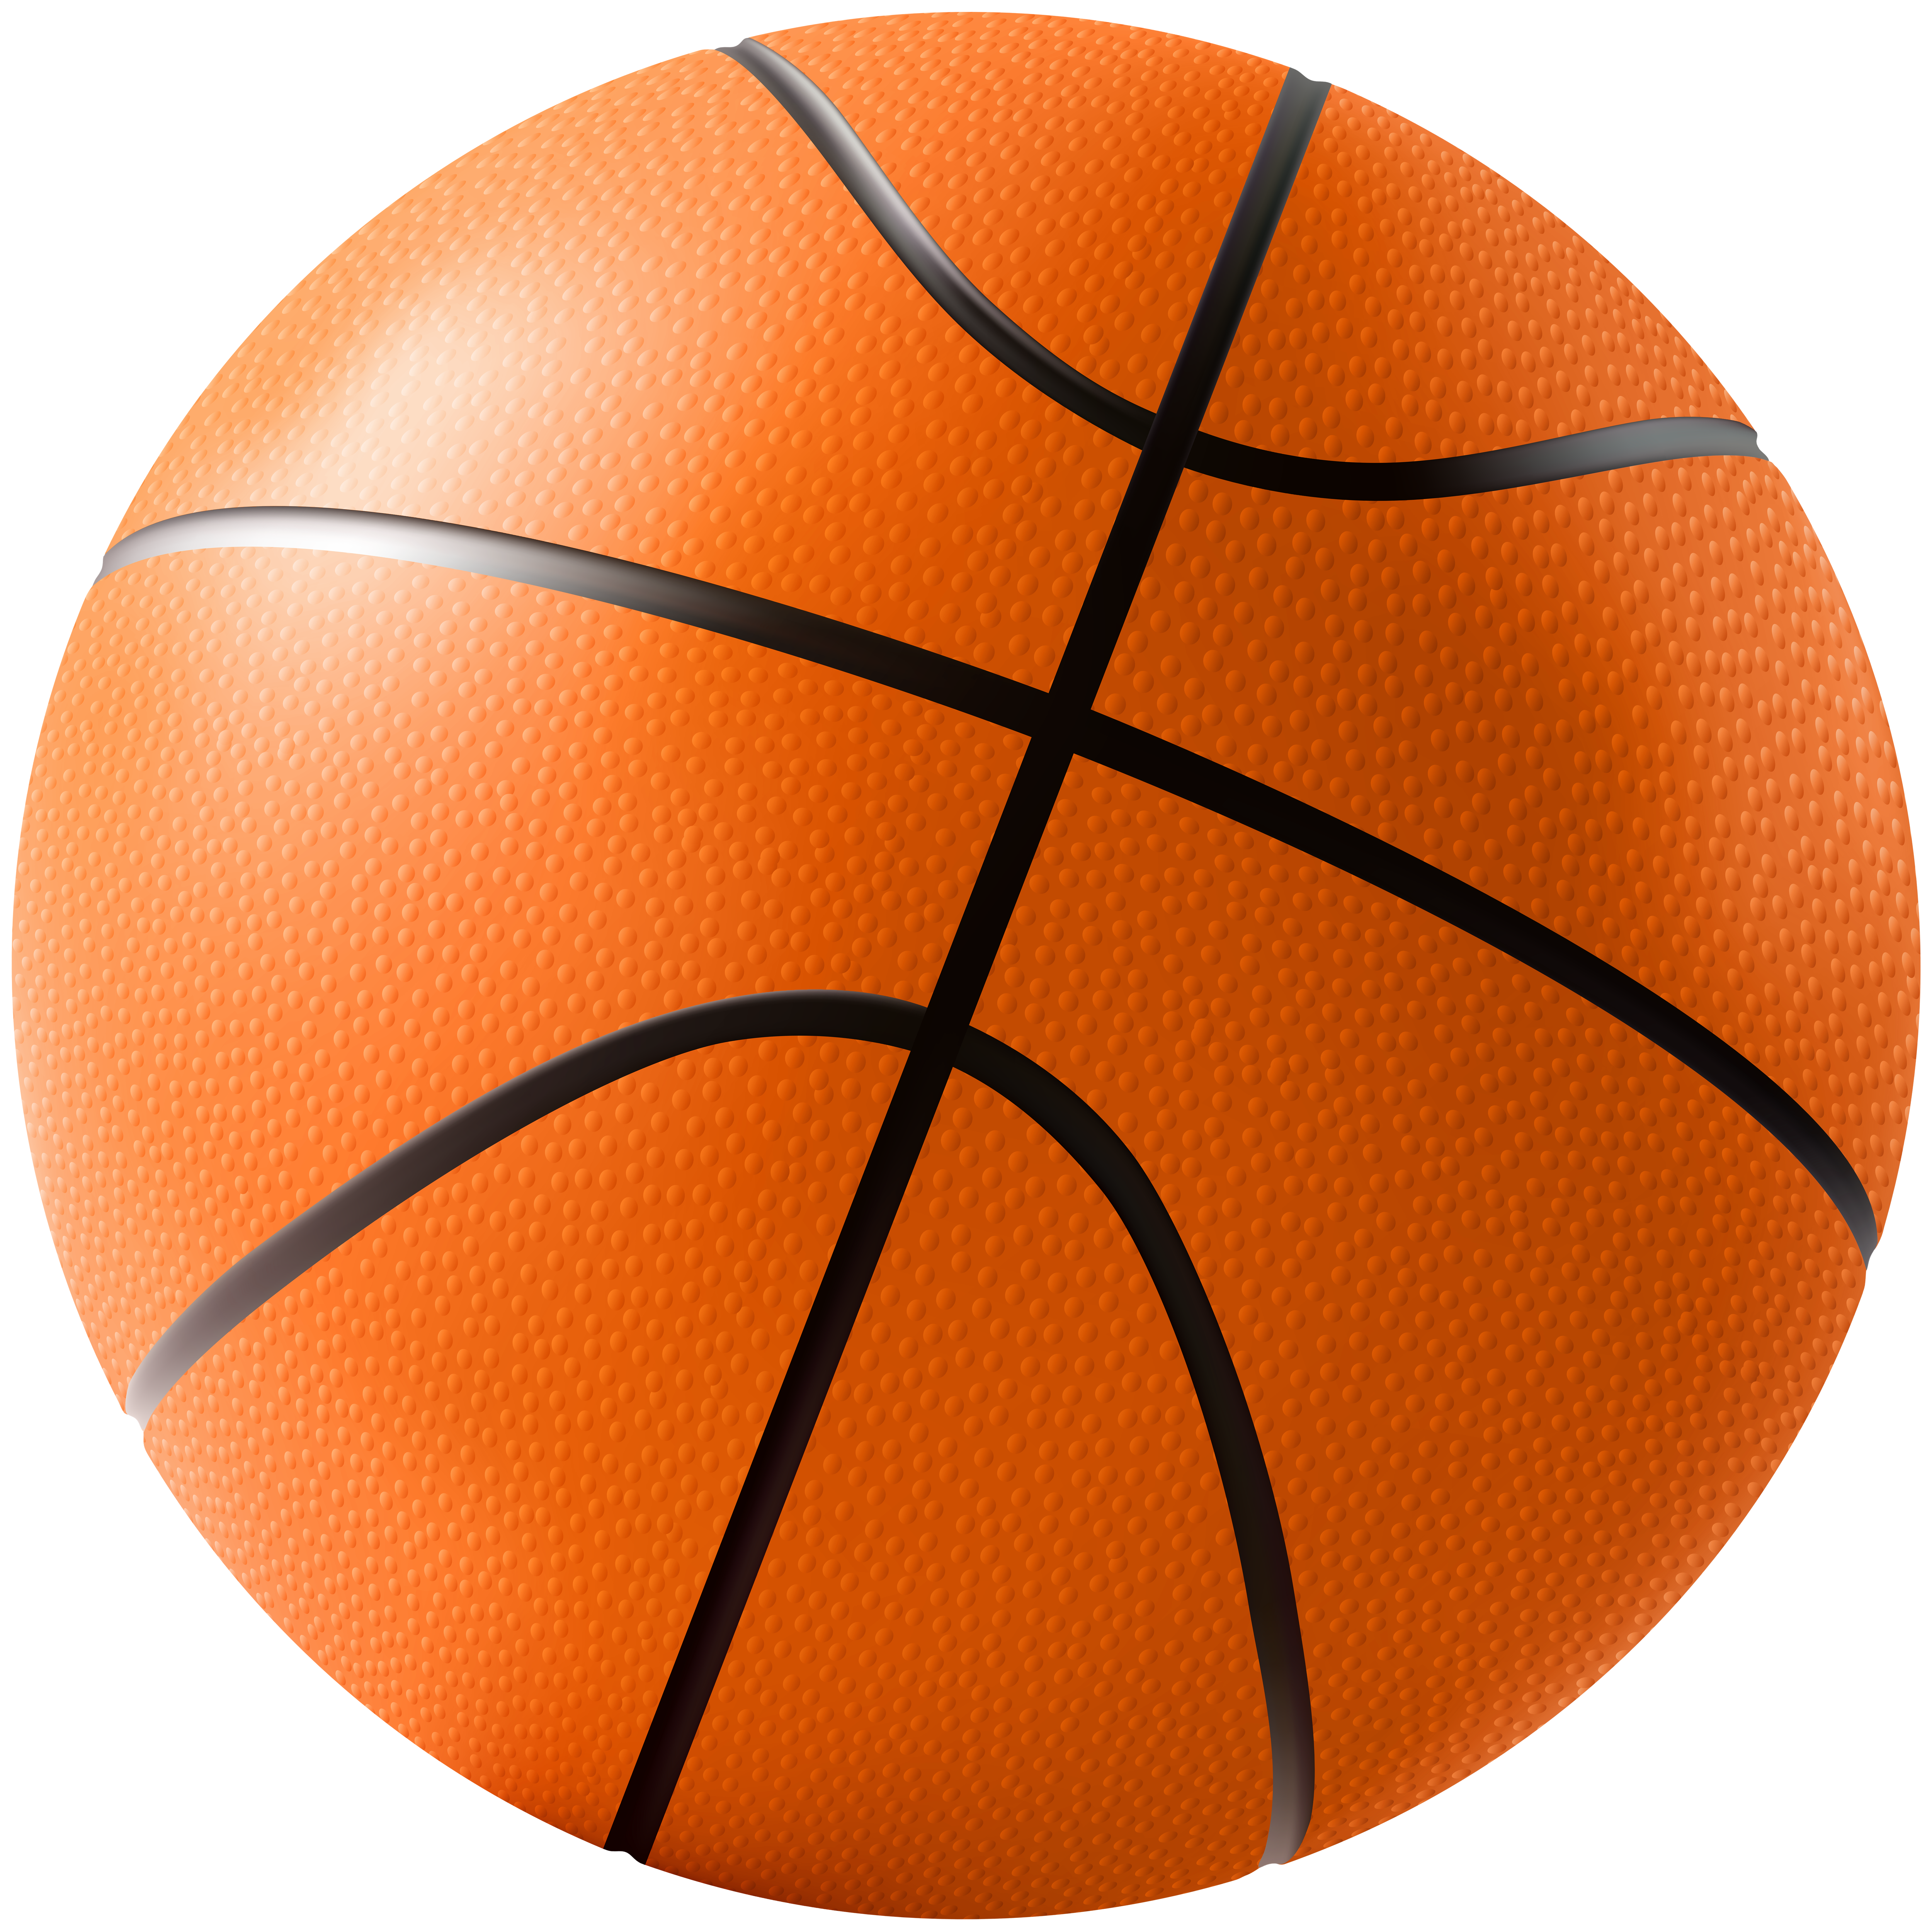 Спортивный мяч в баскетболе. Баскетбольный мяч. Оранжевый мячик. Баскетбольный мяч на прозрачном фоне. Баскетбольный мяч прозрачный.